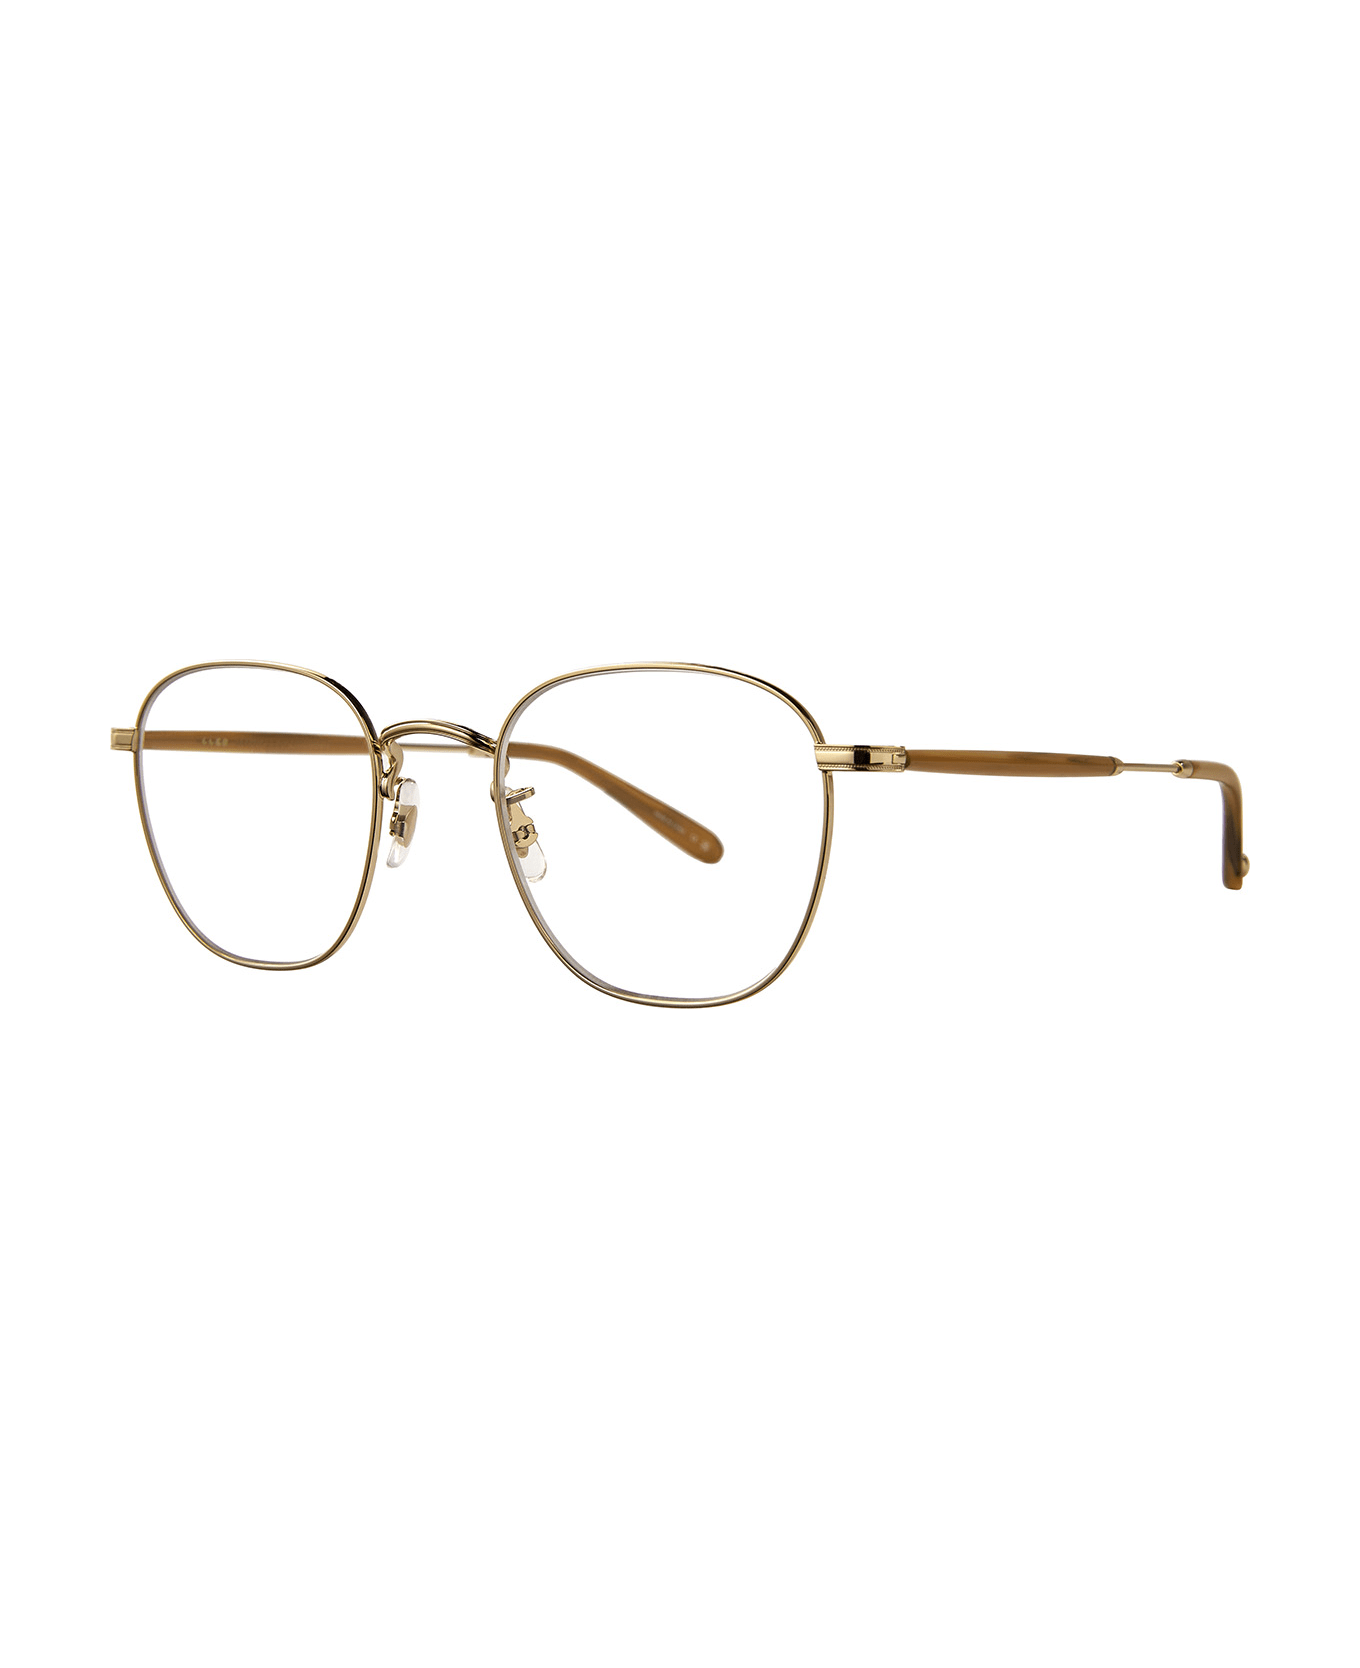 Garrett Leight Grant M Gold-sierra Tortoise Glasses - Gold-Sierra Tortoise アイウェア